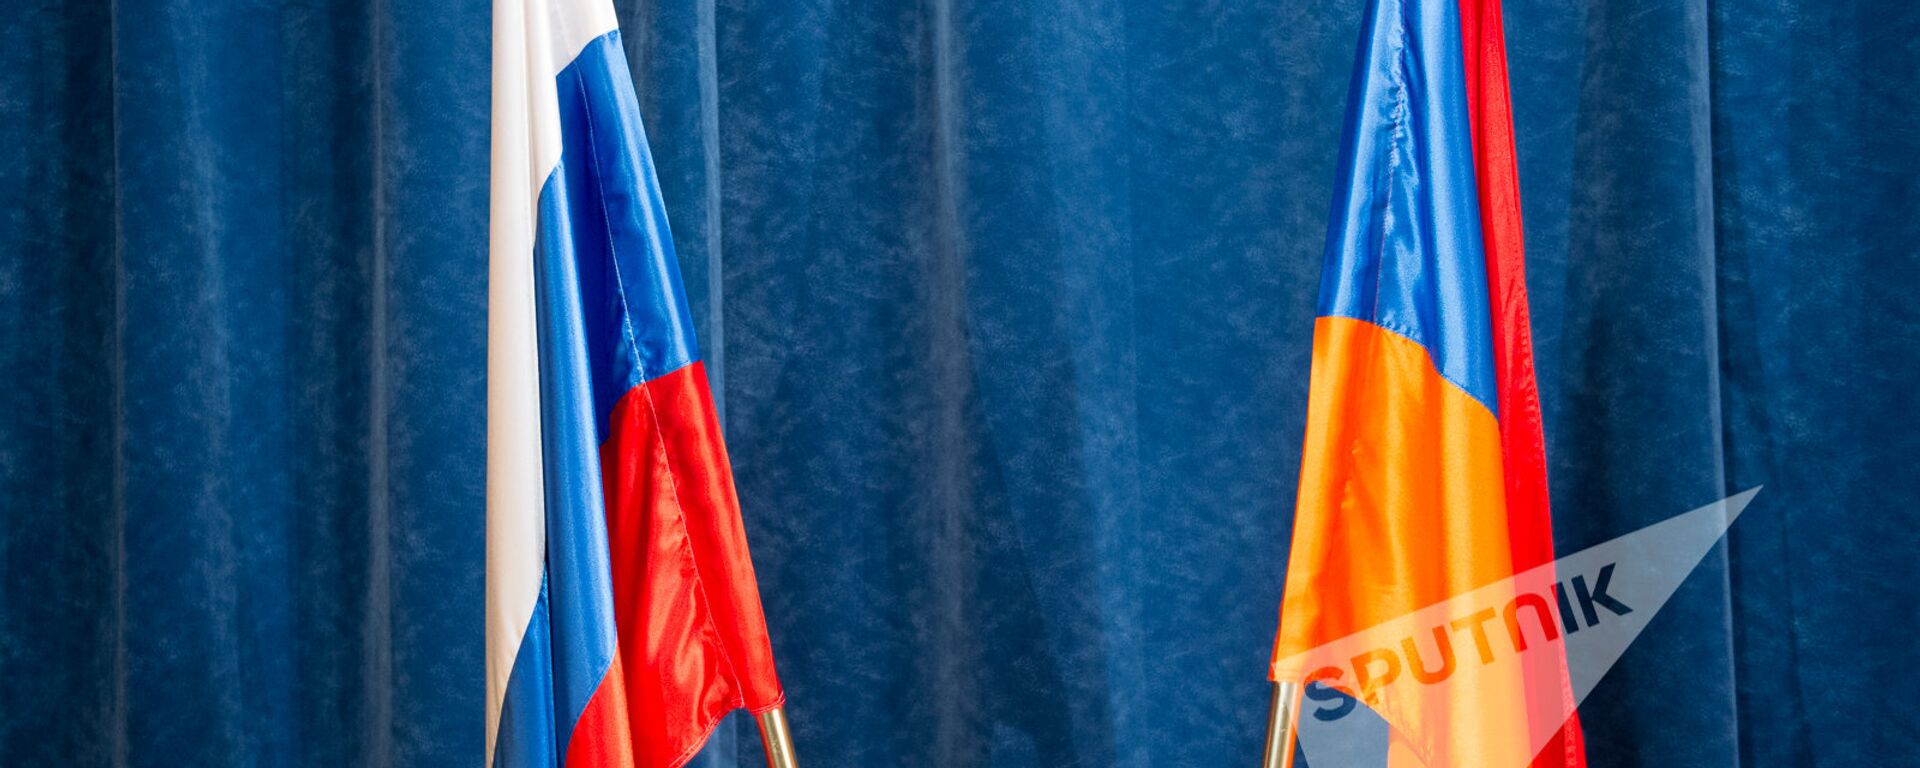 Флаги России и Армении  - Sputnik Արմենիա, 1920, 20.05.2021